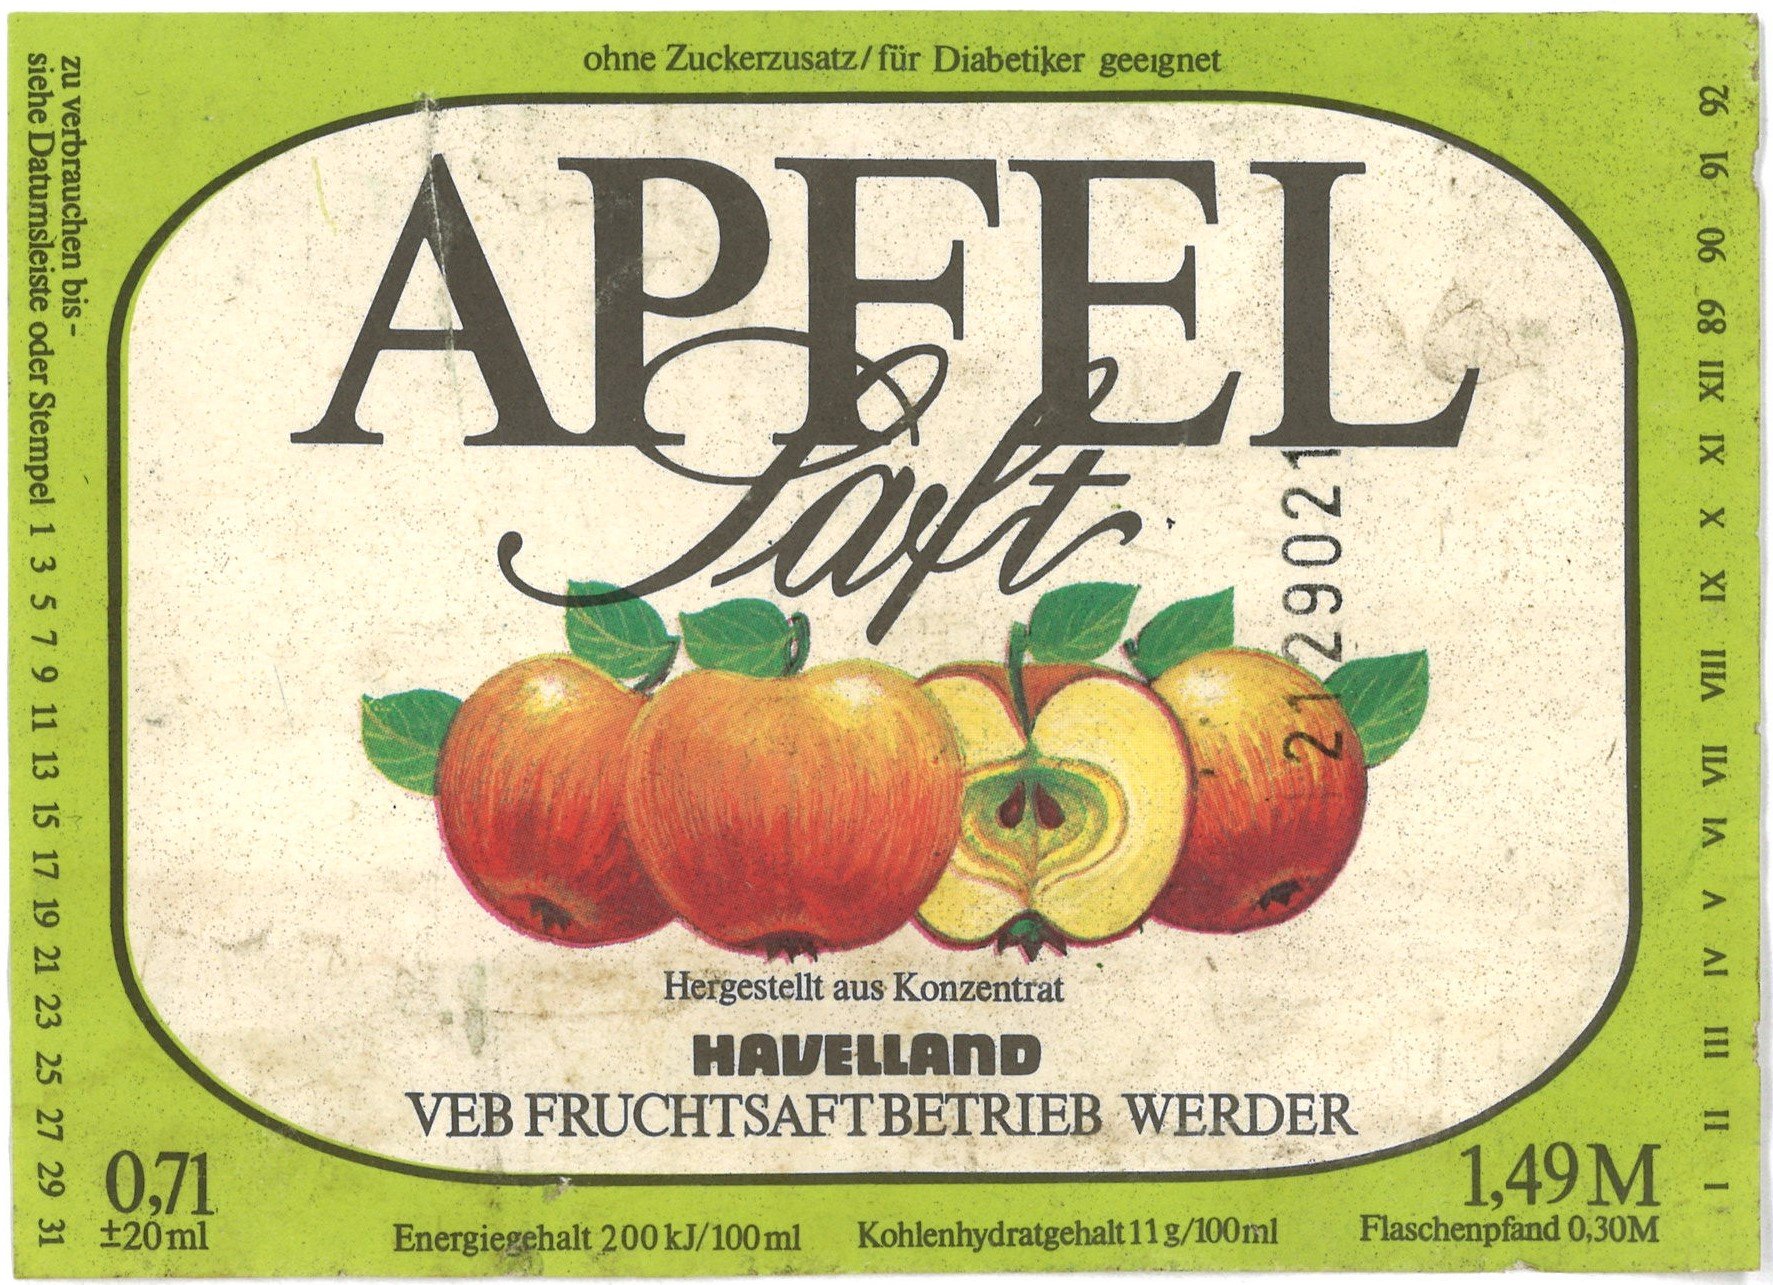 Werder (Havel), VEB Fruchtsaftbetrieb Werder: Apfelsaft (Landesgeschichtliche Vereinigung für die Mark Brandenburg e.V., Archiv CC BY)